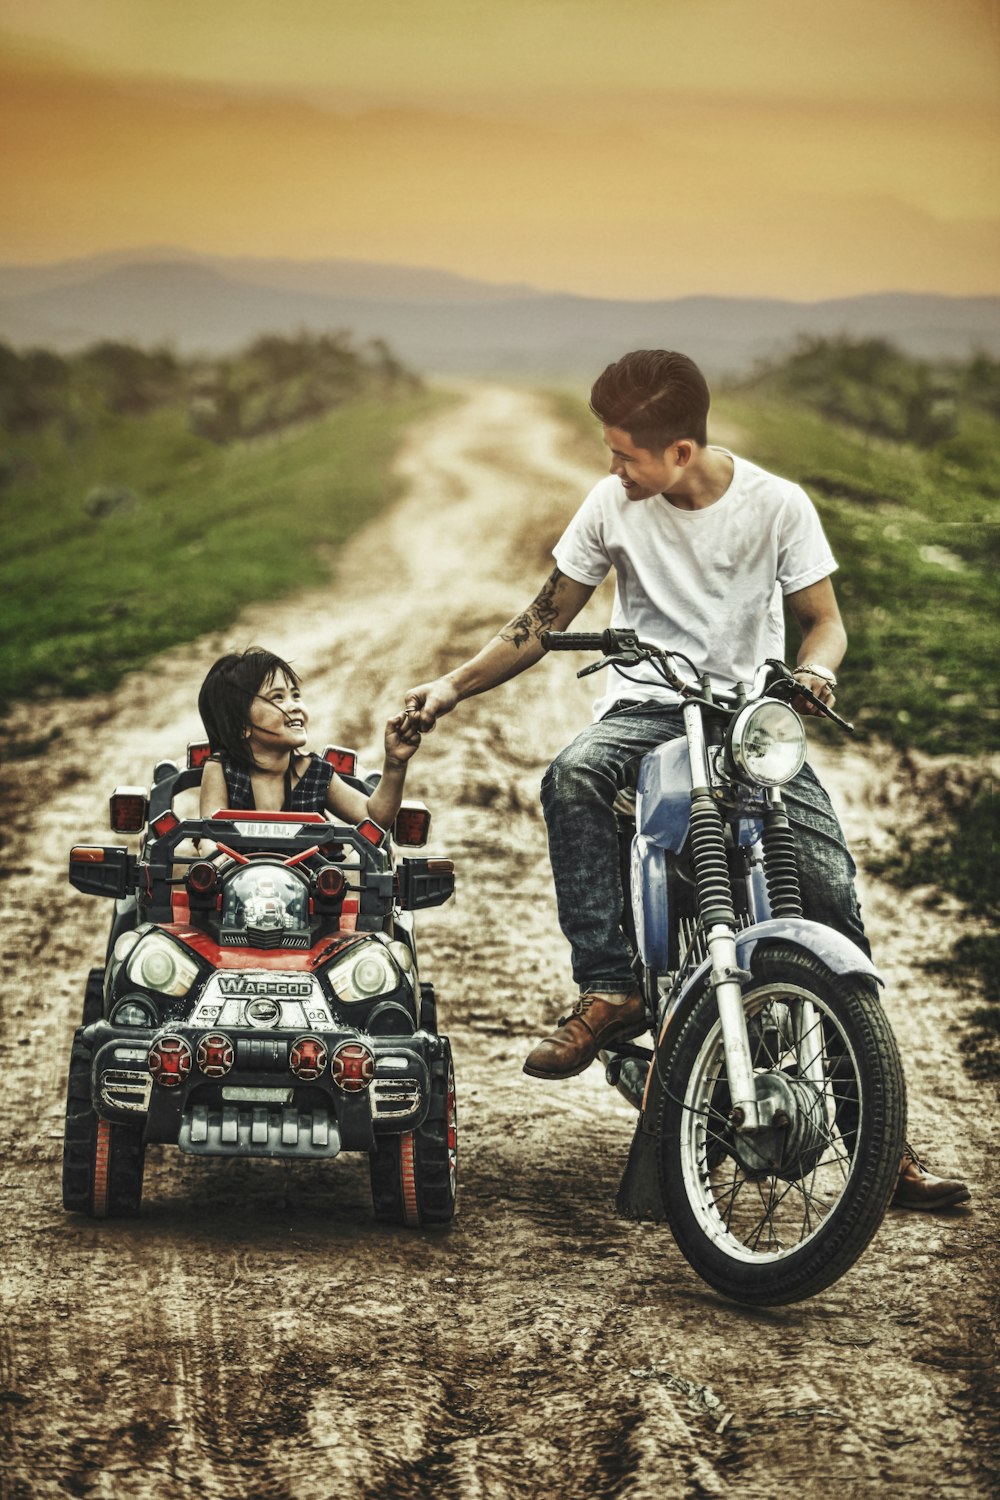 Mann fährt Motorrad und Kleinkind auf einem Spielzeugauto auf einer Straße während des Tages